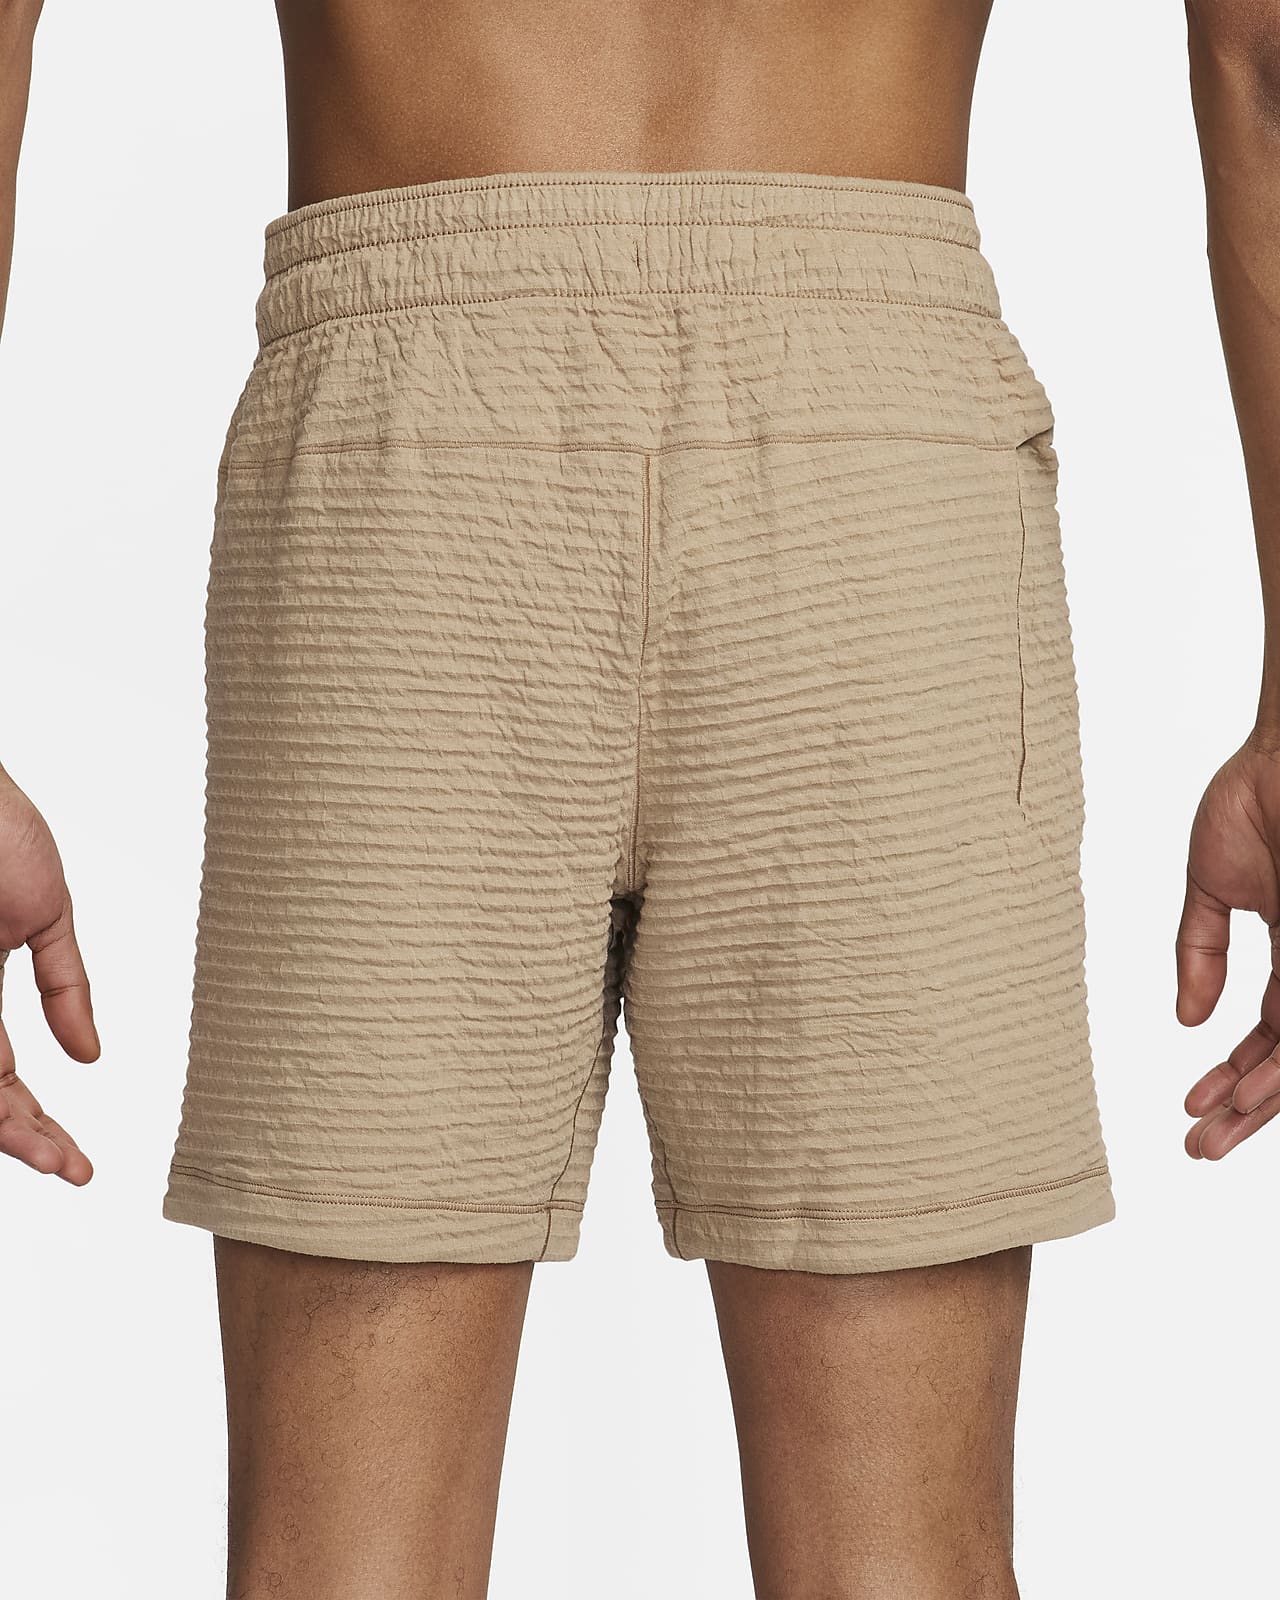 Nike Yoga Men's Dri-FIT 7 Unlined Shorts